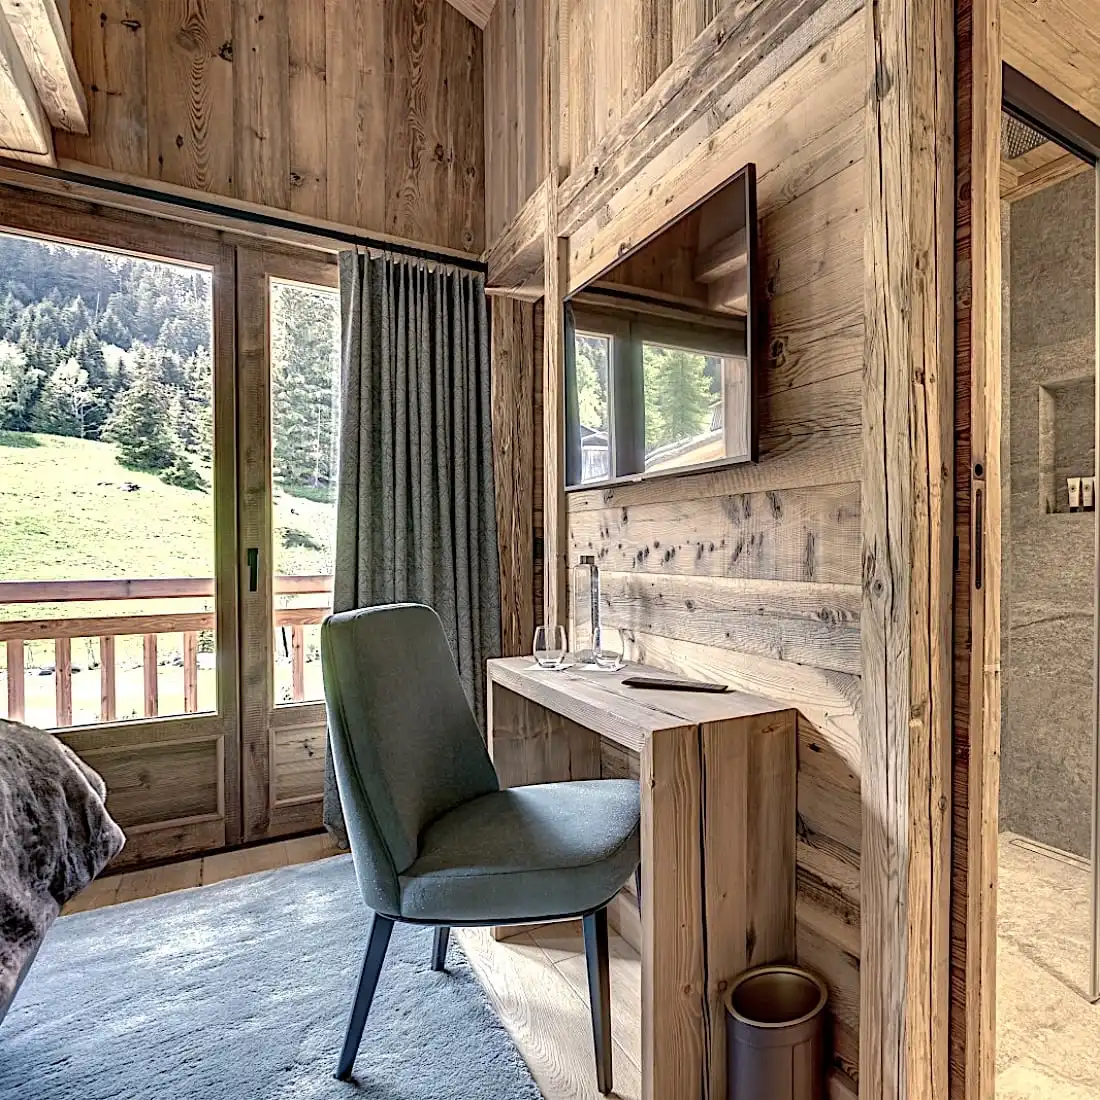  Un intérieur de cabane en bois confortable comprenant une chaise verte devant un bureau et de grandes fenêtres donnant sur un paysage de montagne boisé pittoresque. La cabane est agrémentée de panneaux vieux bois pour un aspect rustique authentique 